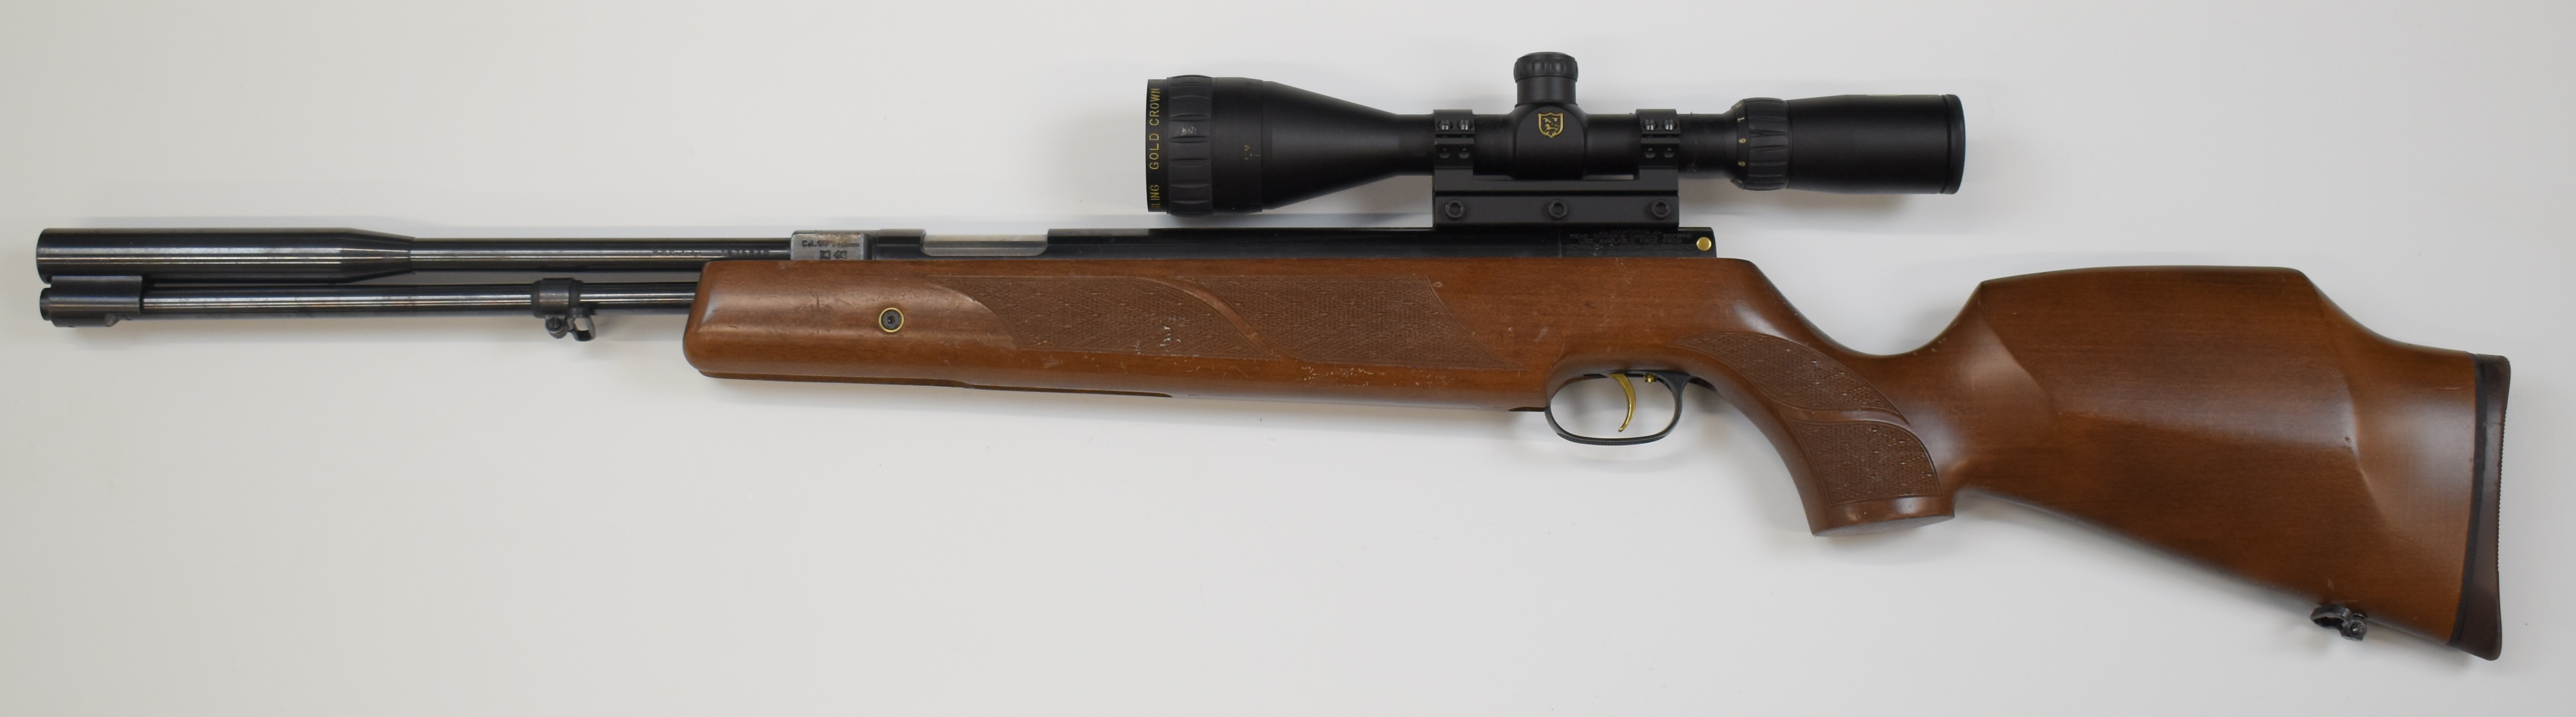 Weihrauch HW97K .177 underlever air rifle with chequered semi-pistol grip, raised cheek piece, sling - Image 6 of 10